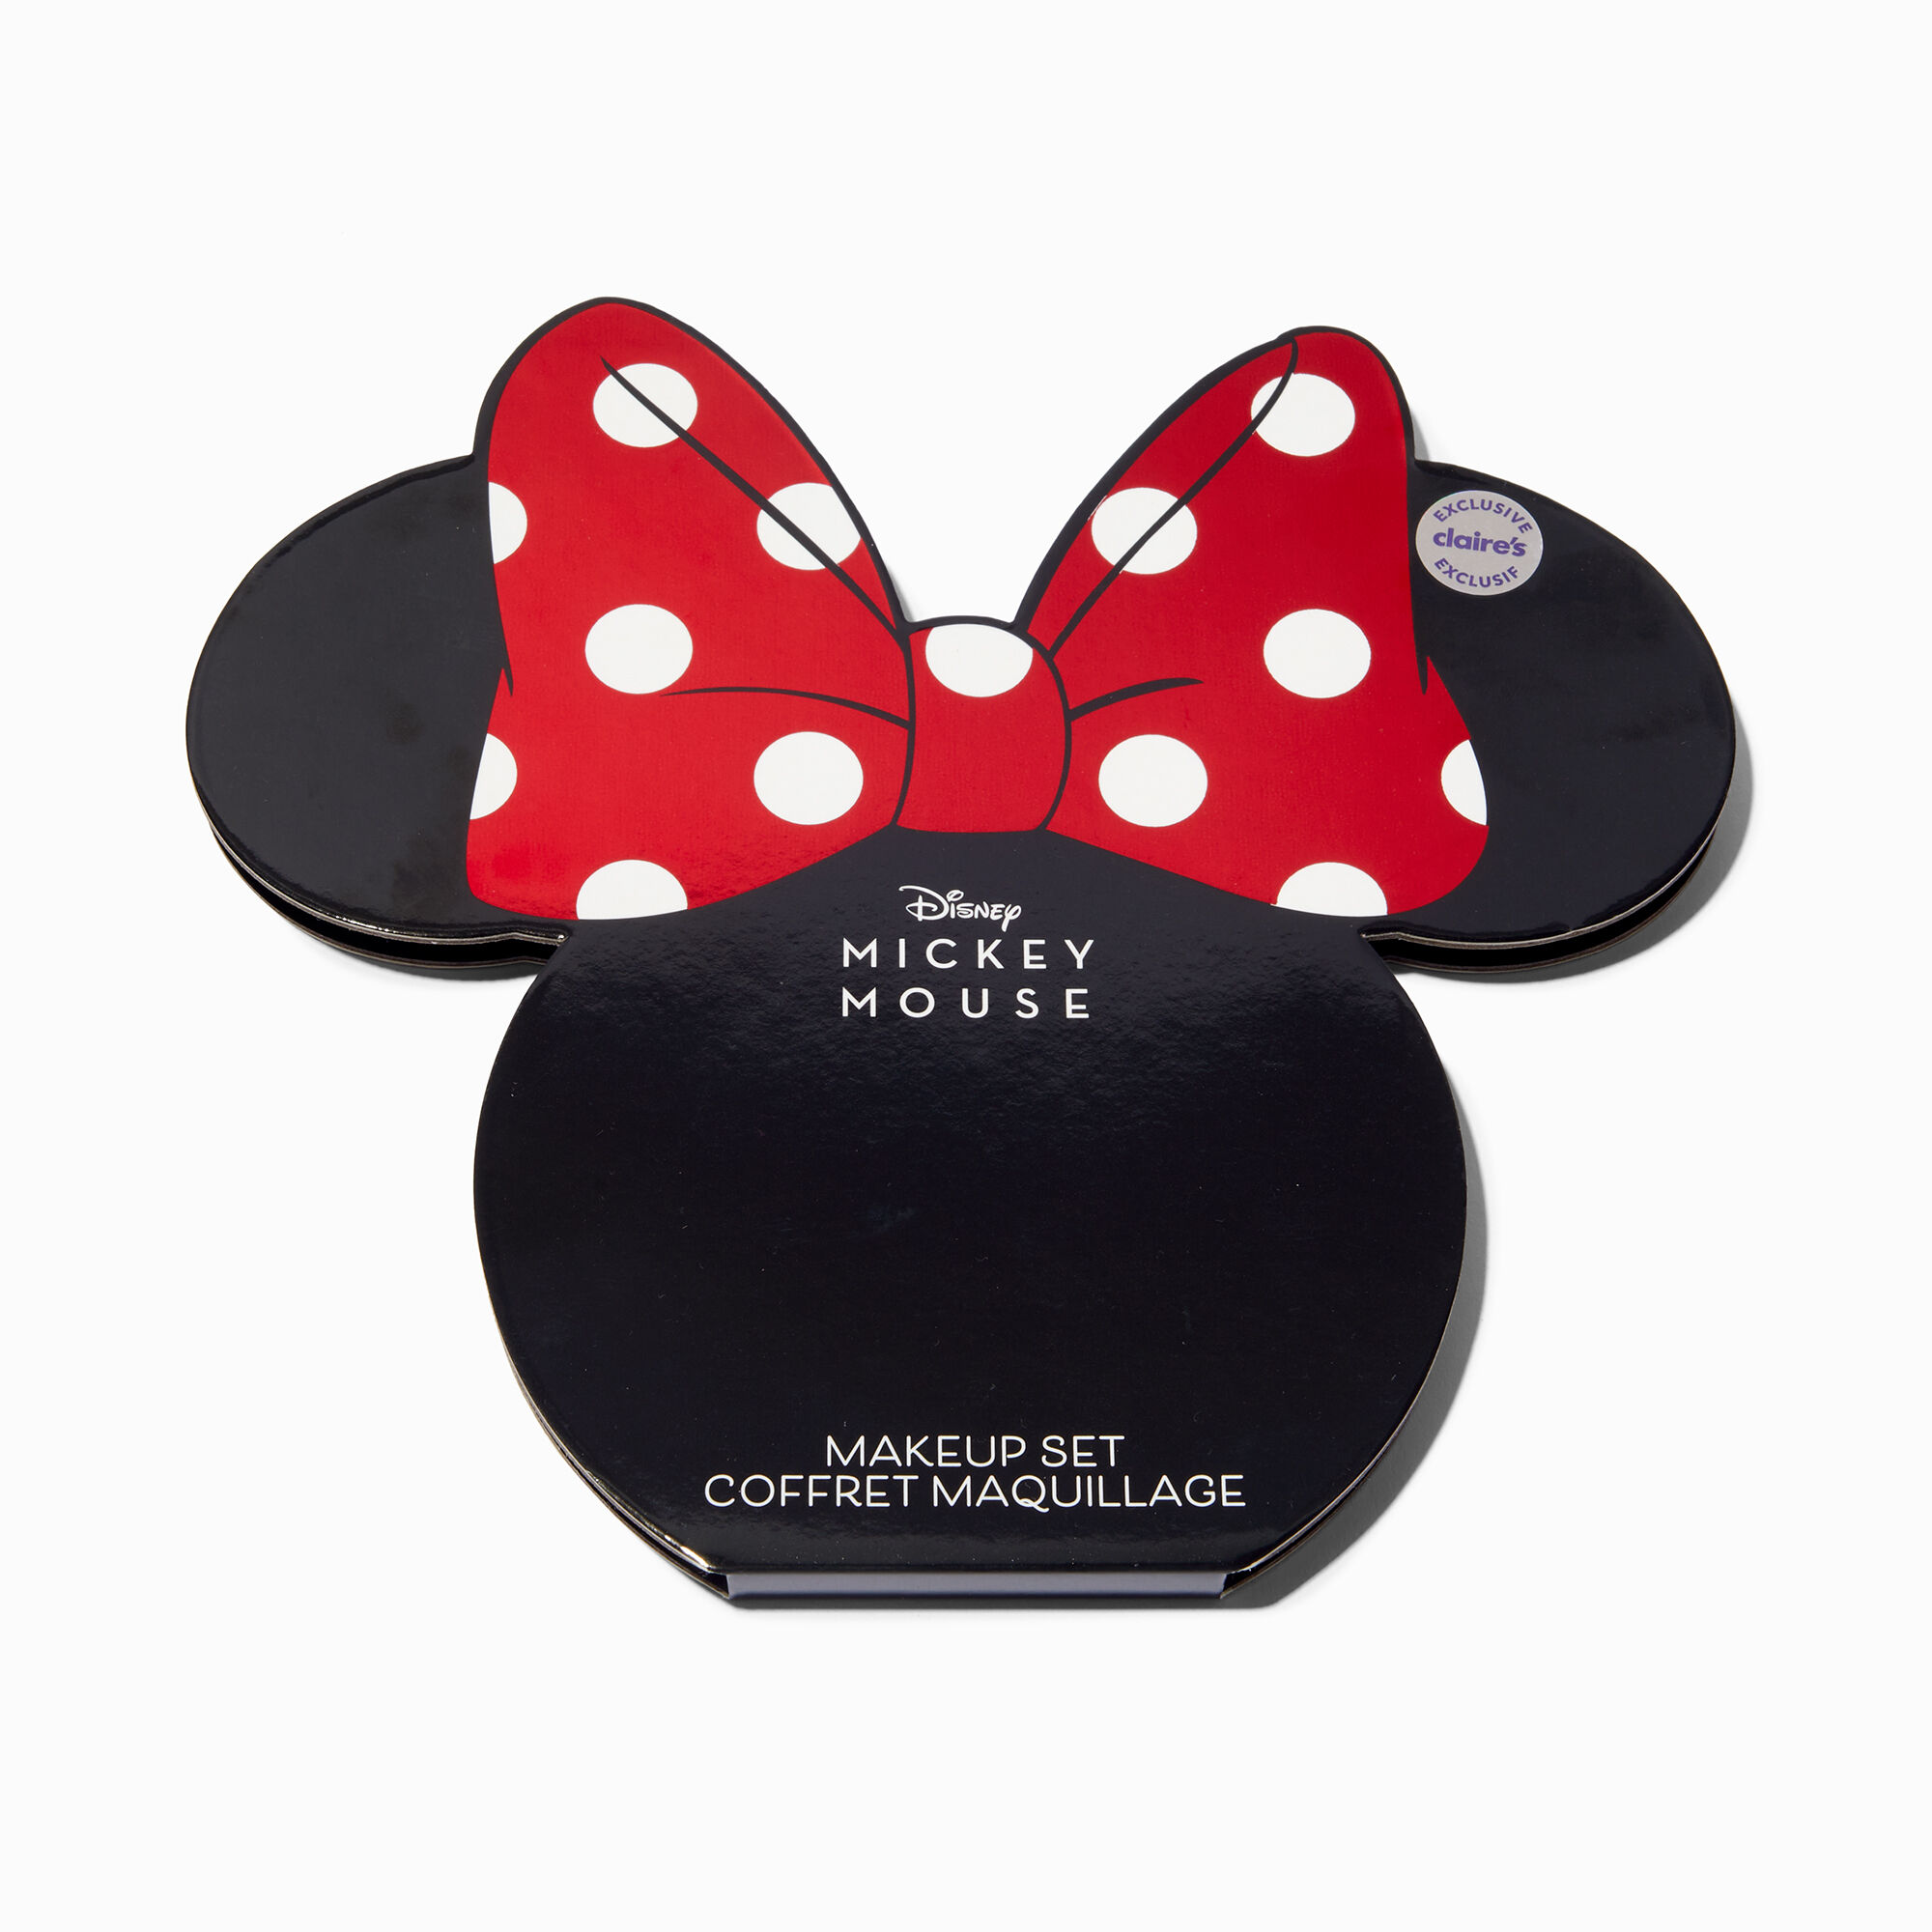 View Claires Disney 100 Minnie Mouse Makeup Palette information